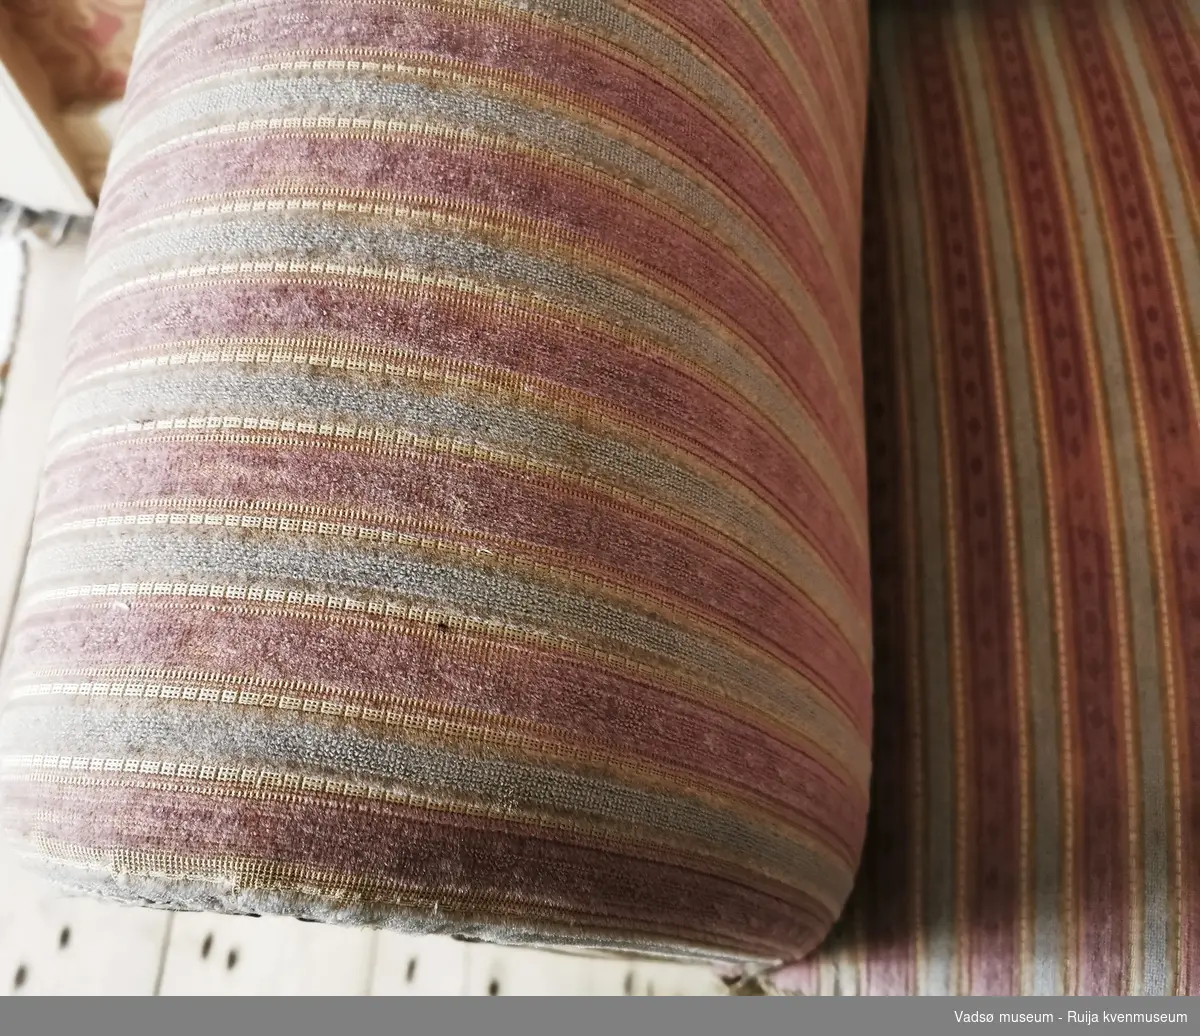 Rektangulær sofa i Biedermeier-stil. S-formet ryggbrett. Glatt, profilert rygglist. S-formede utoversvungne lener og lett utoversvungne bein. Lener, nedre kant av sargen og sofabeina er dekorert med utskåret blad-/knoppedekor. Sofaen er stoppet og er trukket i rosa, hvitstripet stoff.